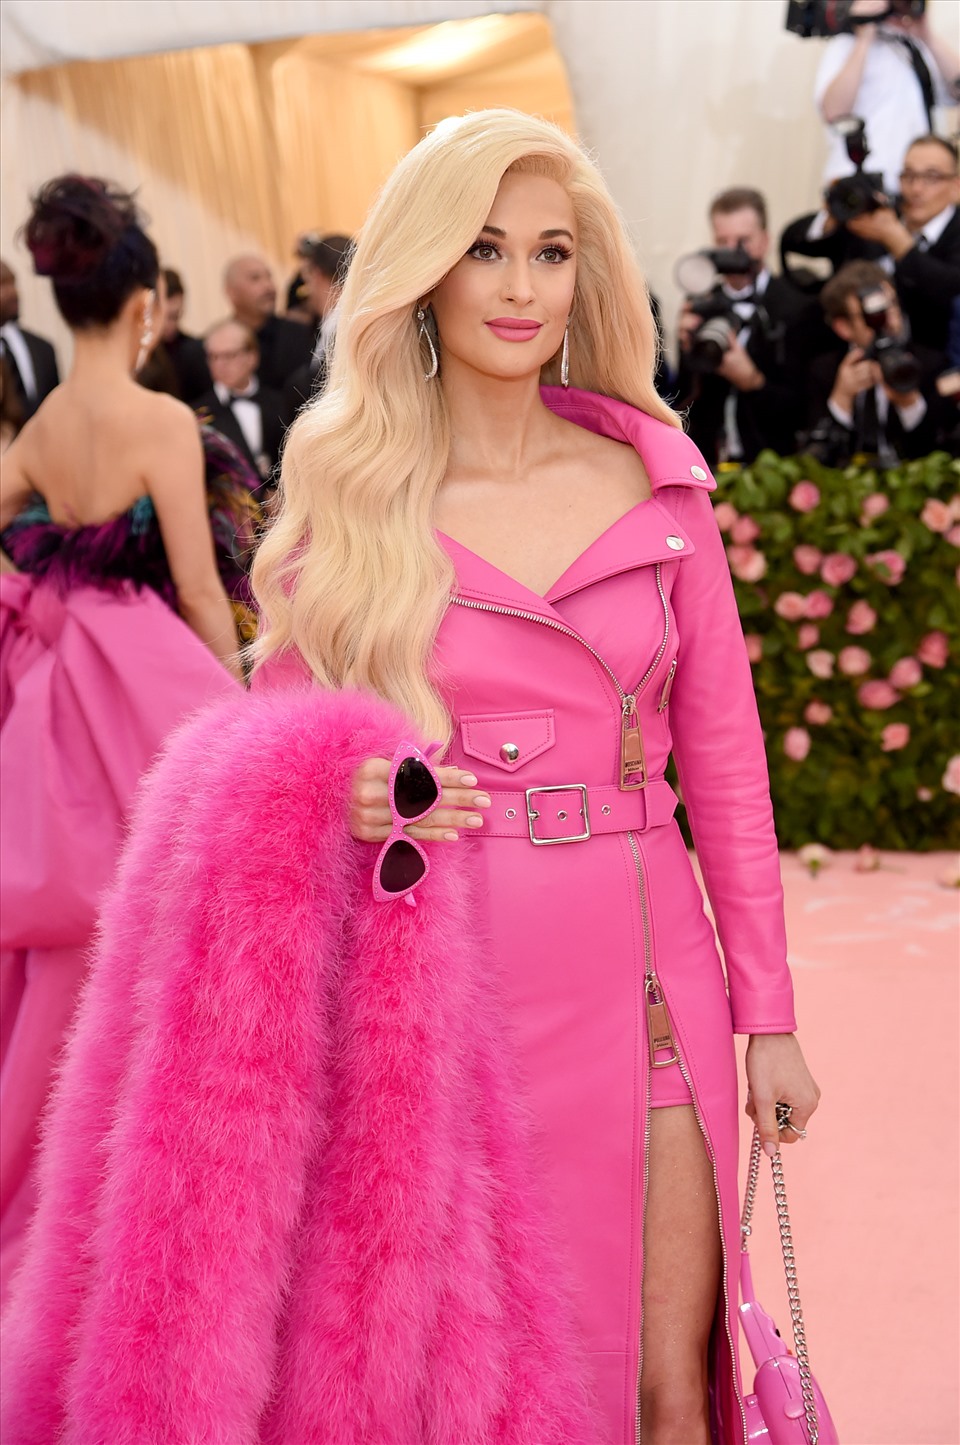 Kacey Musgraves cũng có một bộ trang phục Barbie mang tính biểu tượng tại Met Gala 2019: Váy hồng dài do Moschino (một thương hiệu rất Barbiecore) thiết kế cùng các phụ kiện khác được xem như một bản sao chính xác của búp bê Barbie x Moschino bán trong cửa hàng quà tặng vào thời điểm đó. Ảnh: AFP